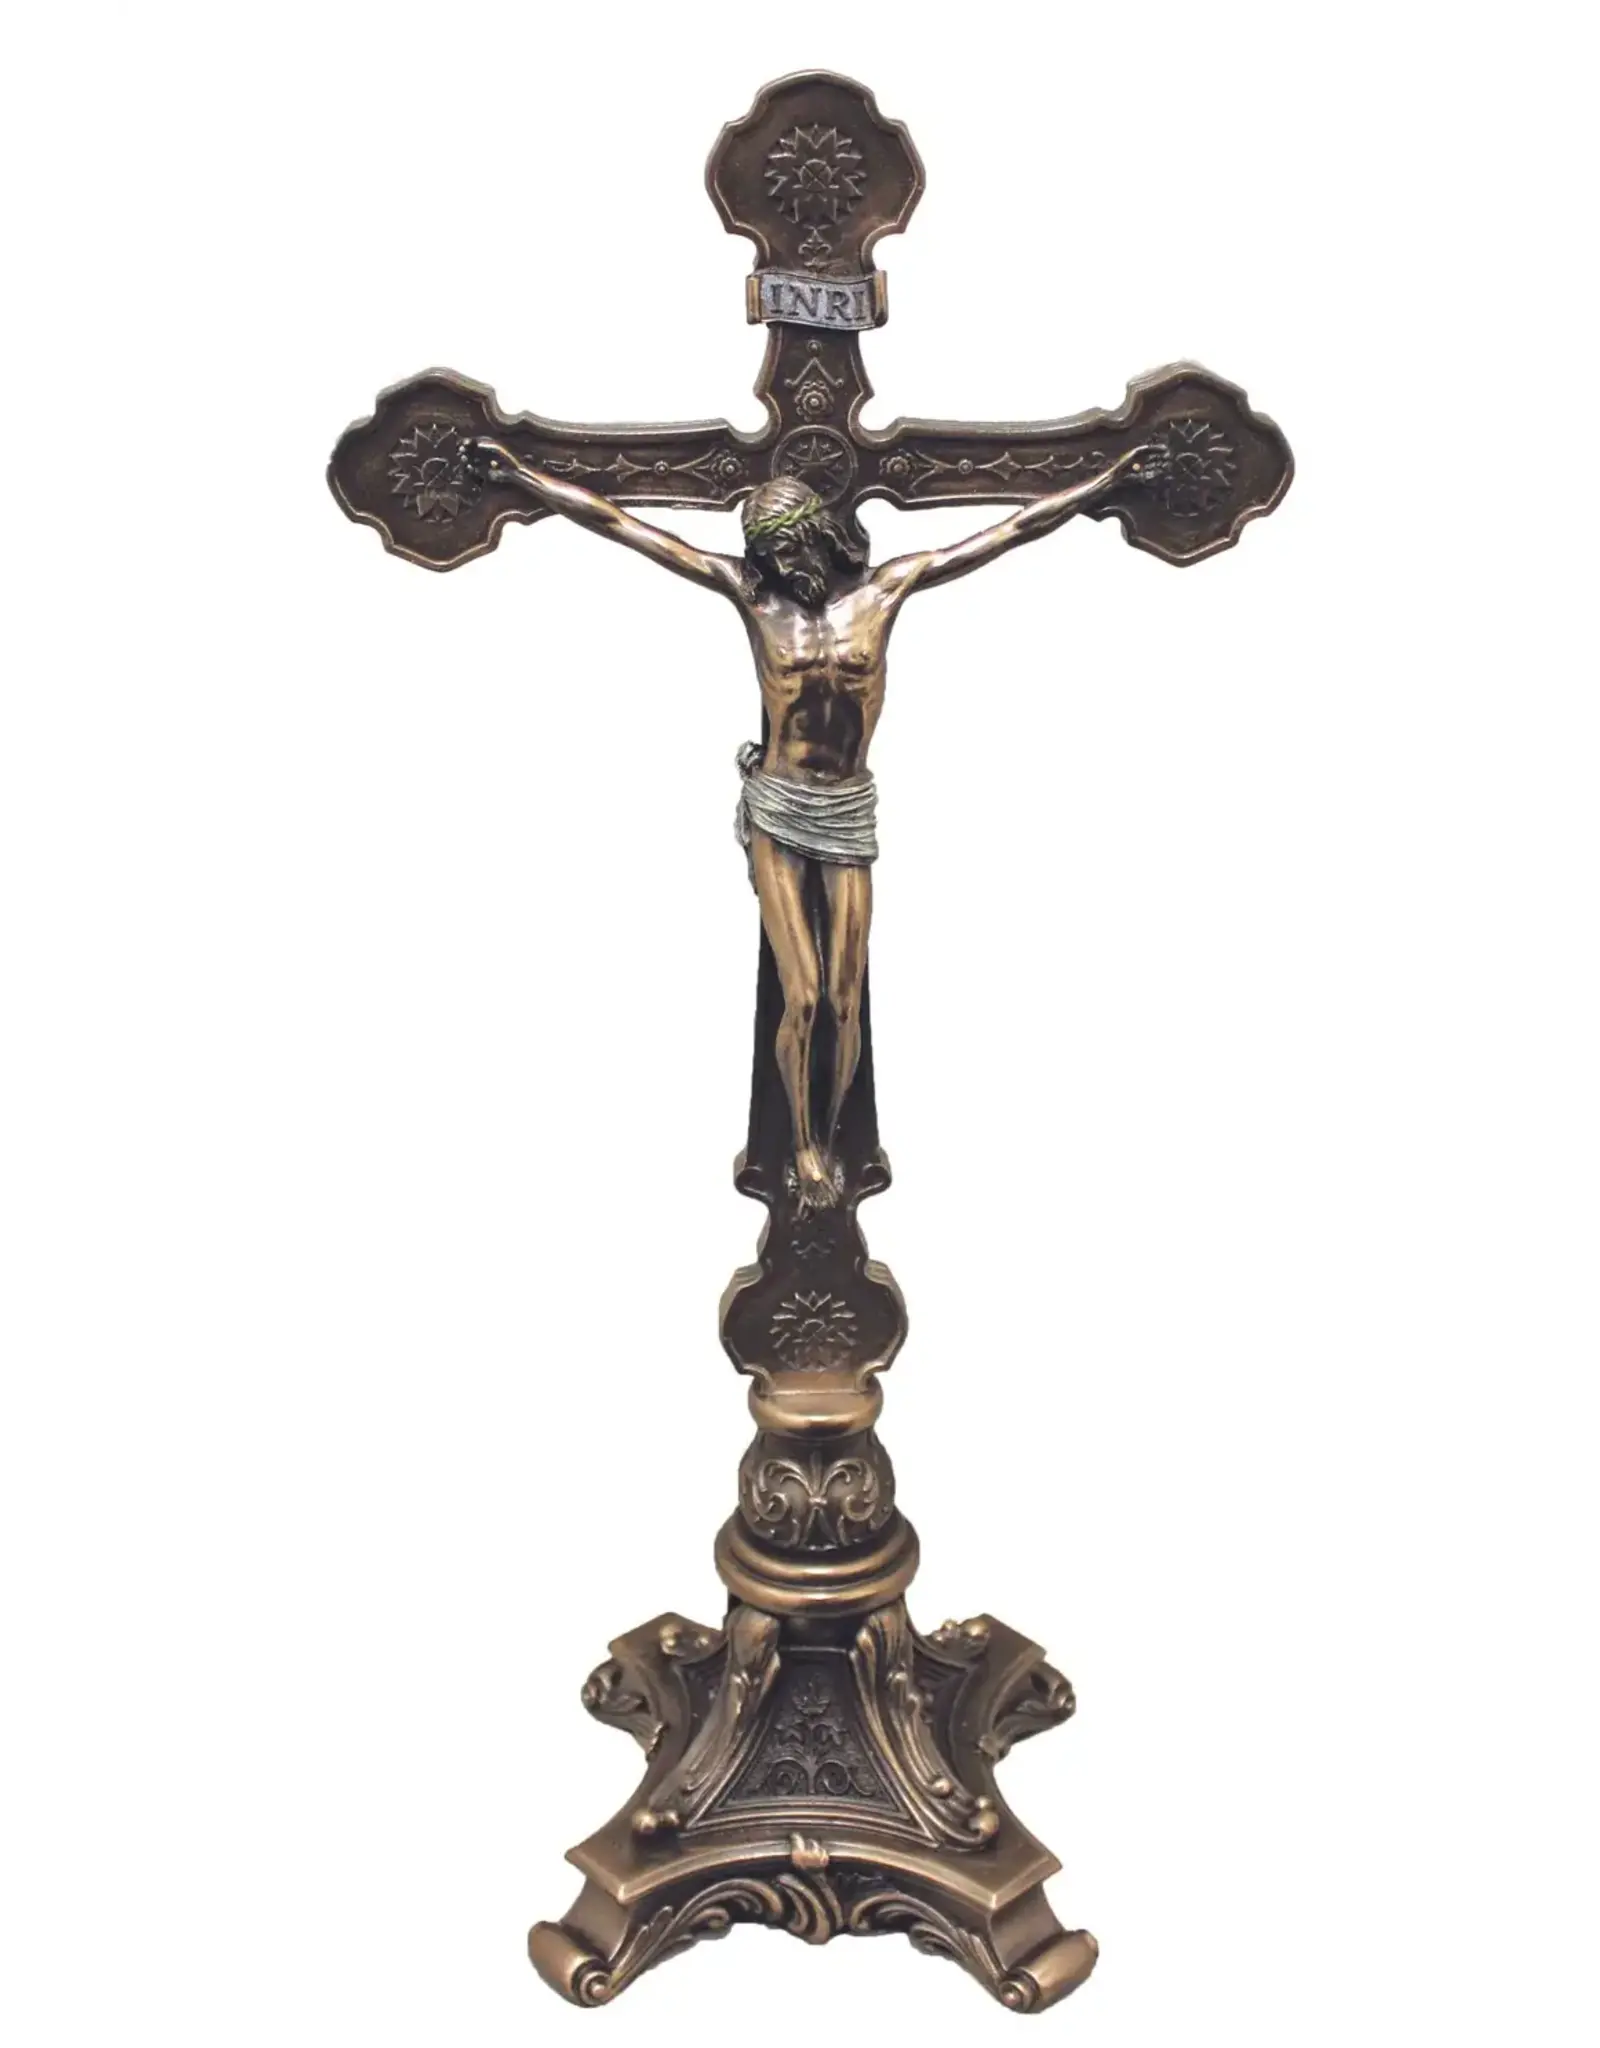 Goldscheider Standing Crucifix - Bronze (13")